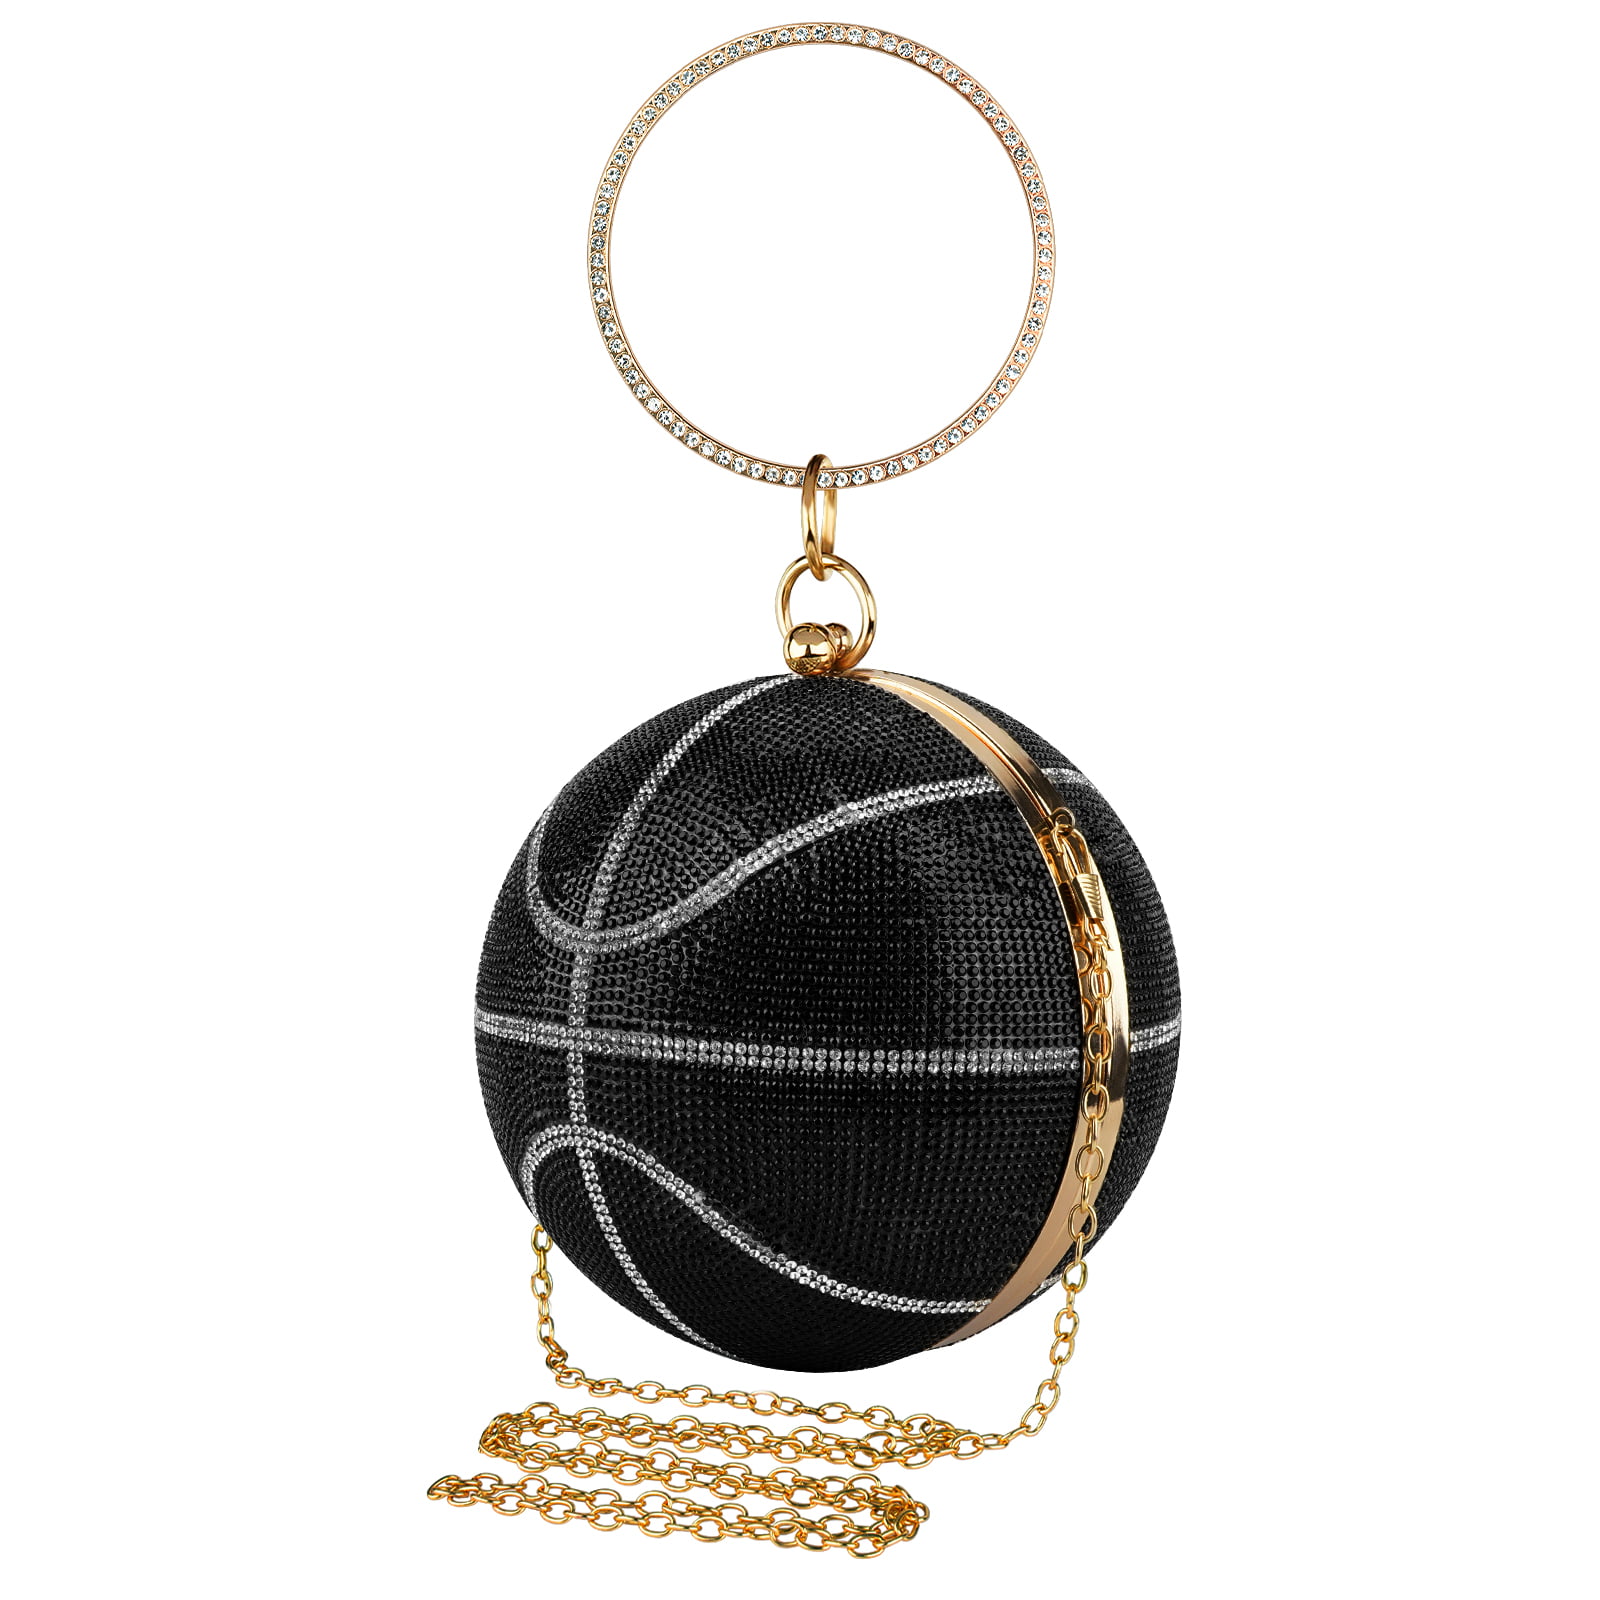 Rhinestone Basketball Purse for Women, Small Round Ball Crystal Evening Bag,  Glitter Clutch Crossbody Shoulder Handbag for Wedding Party (Black) 